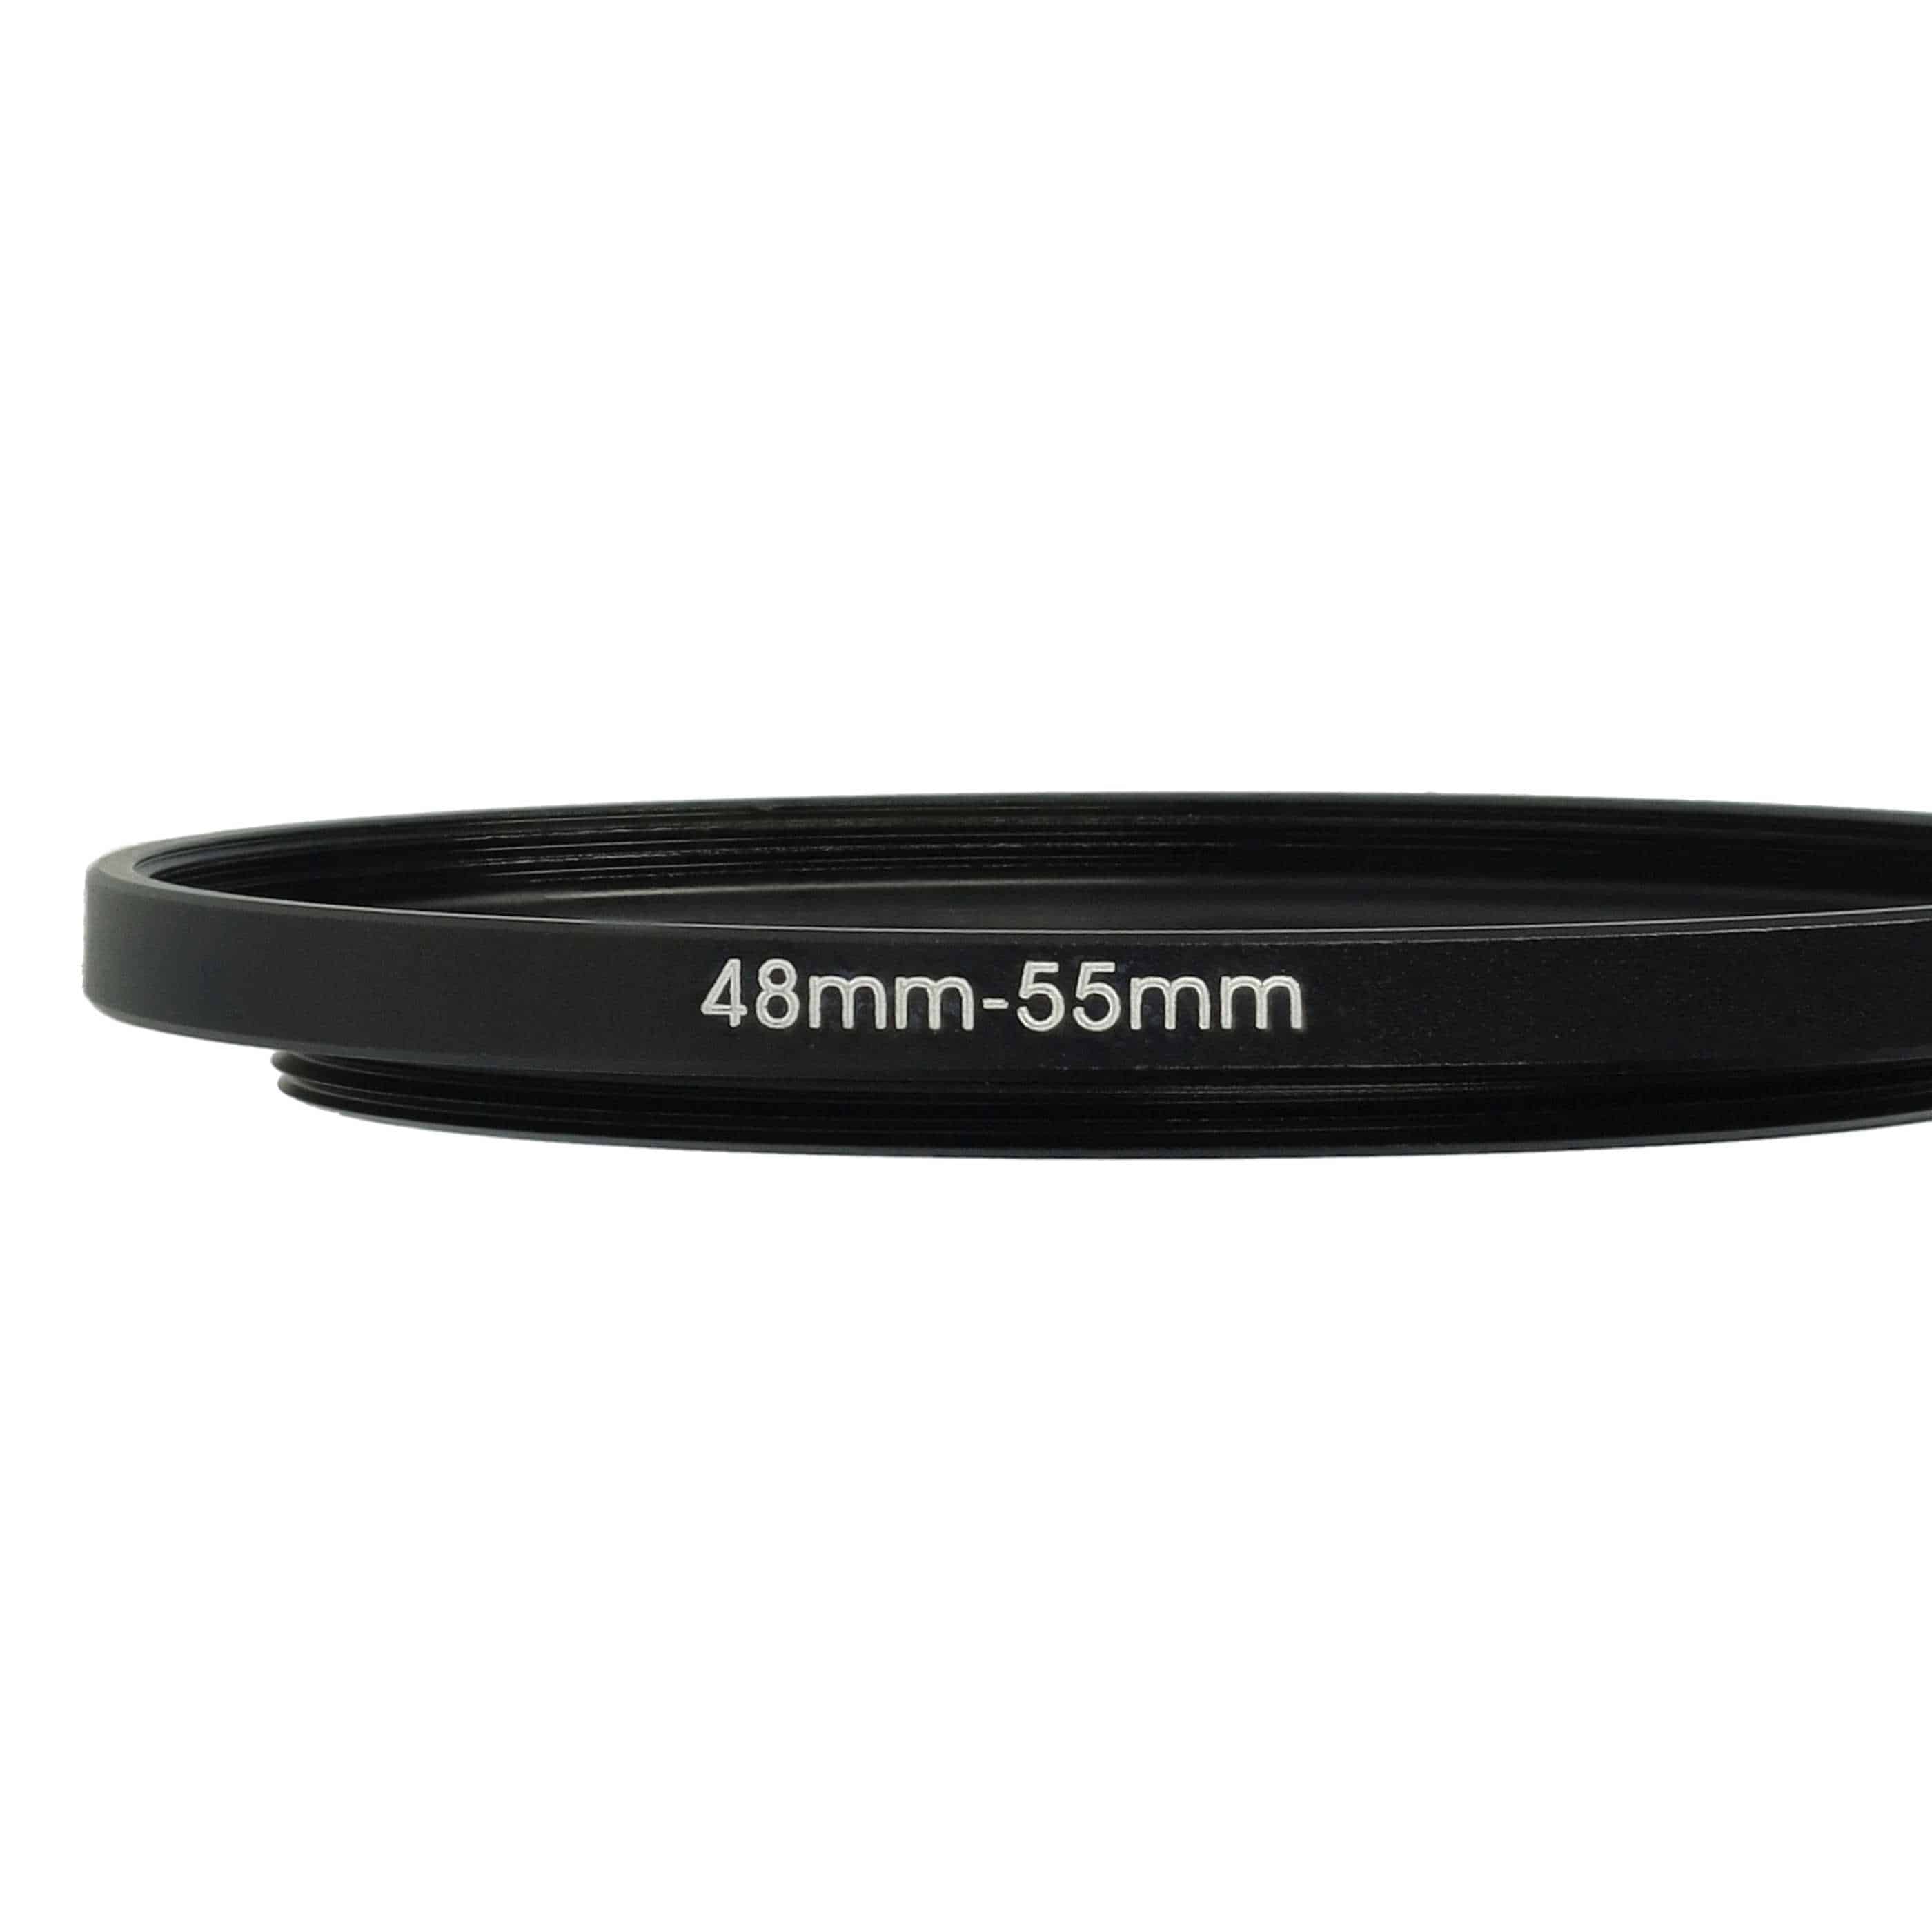 Redukcja filtrowa adapter 48 mm na 55 mm na różne obiektywy 